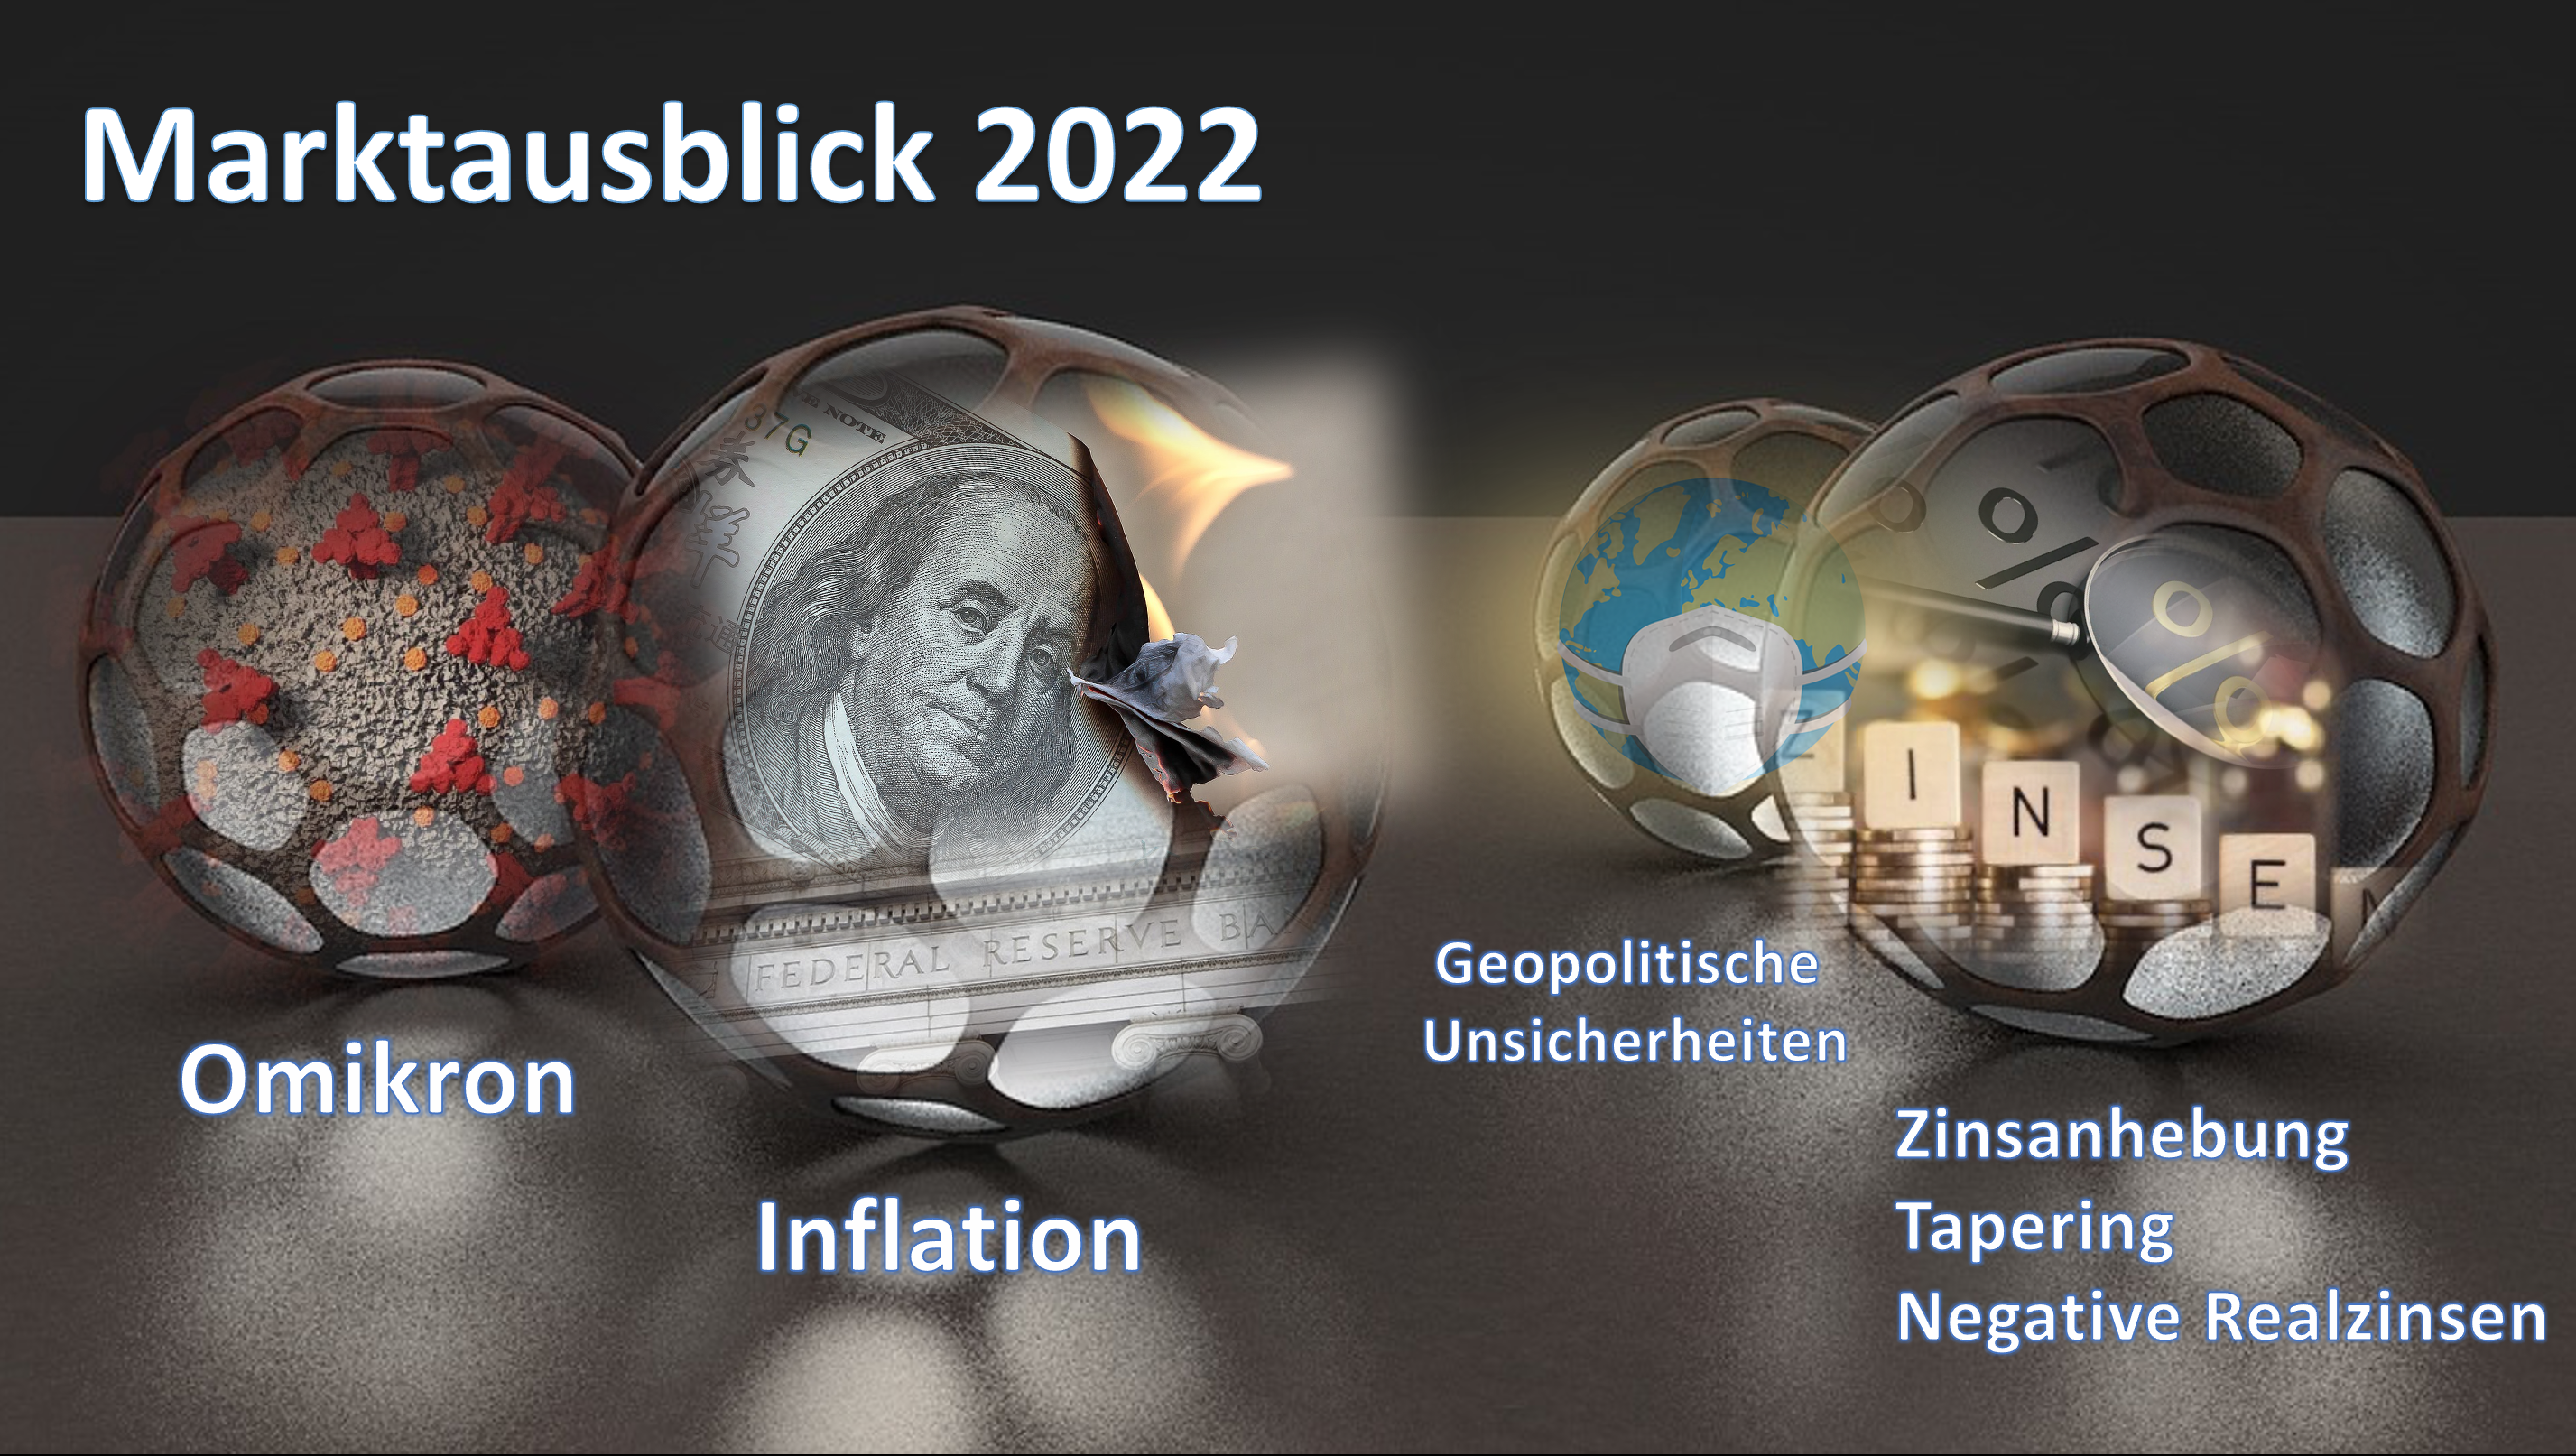 Marktausblick 2022